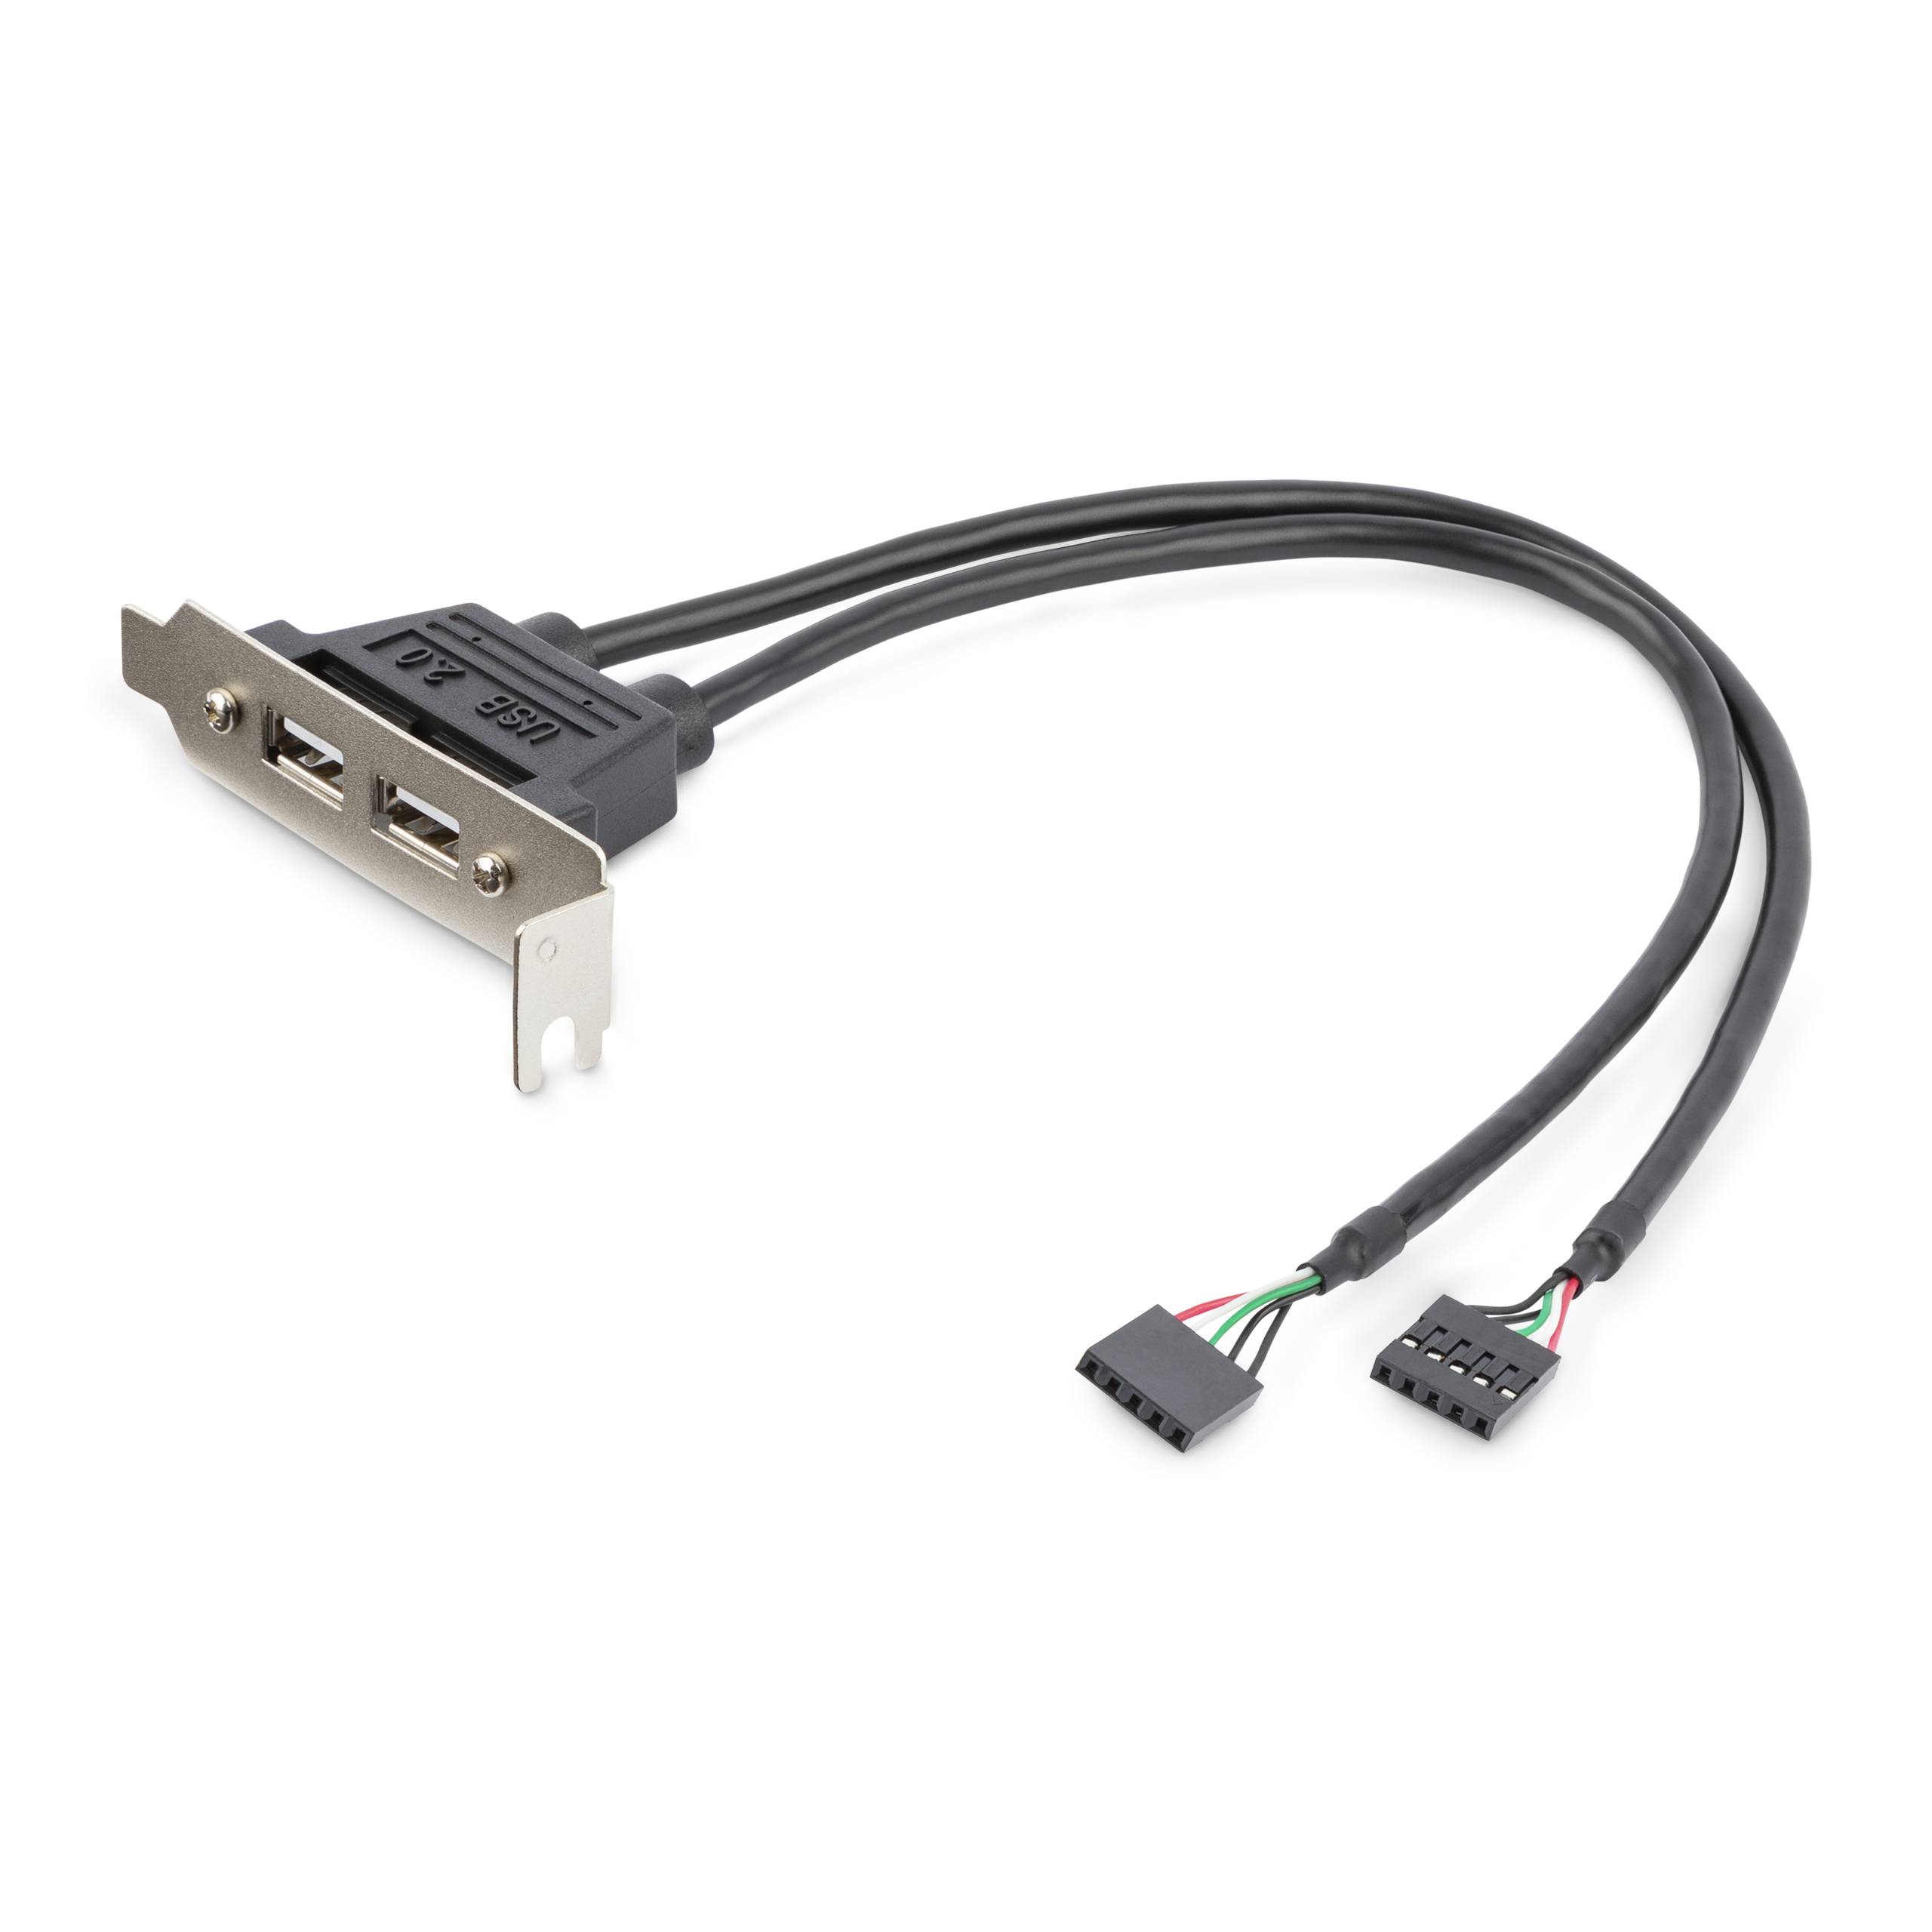 Rca Informatique - image du produit : EQUERRE USB 2 PORTS ADAPTATEUR SLOT USB - FAIBLE ENCOMBREMENT